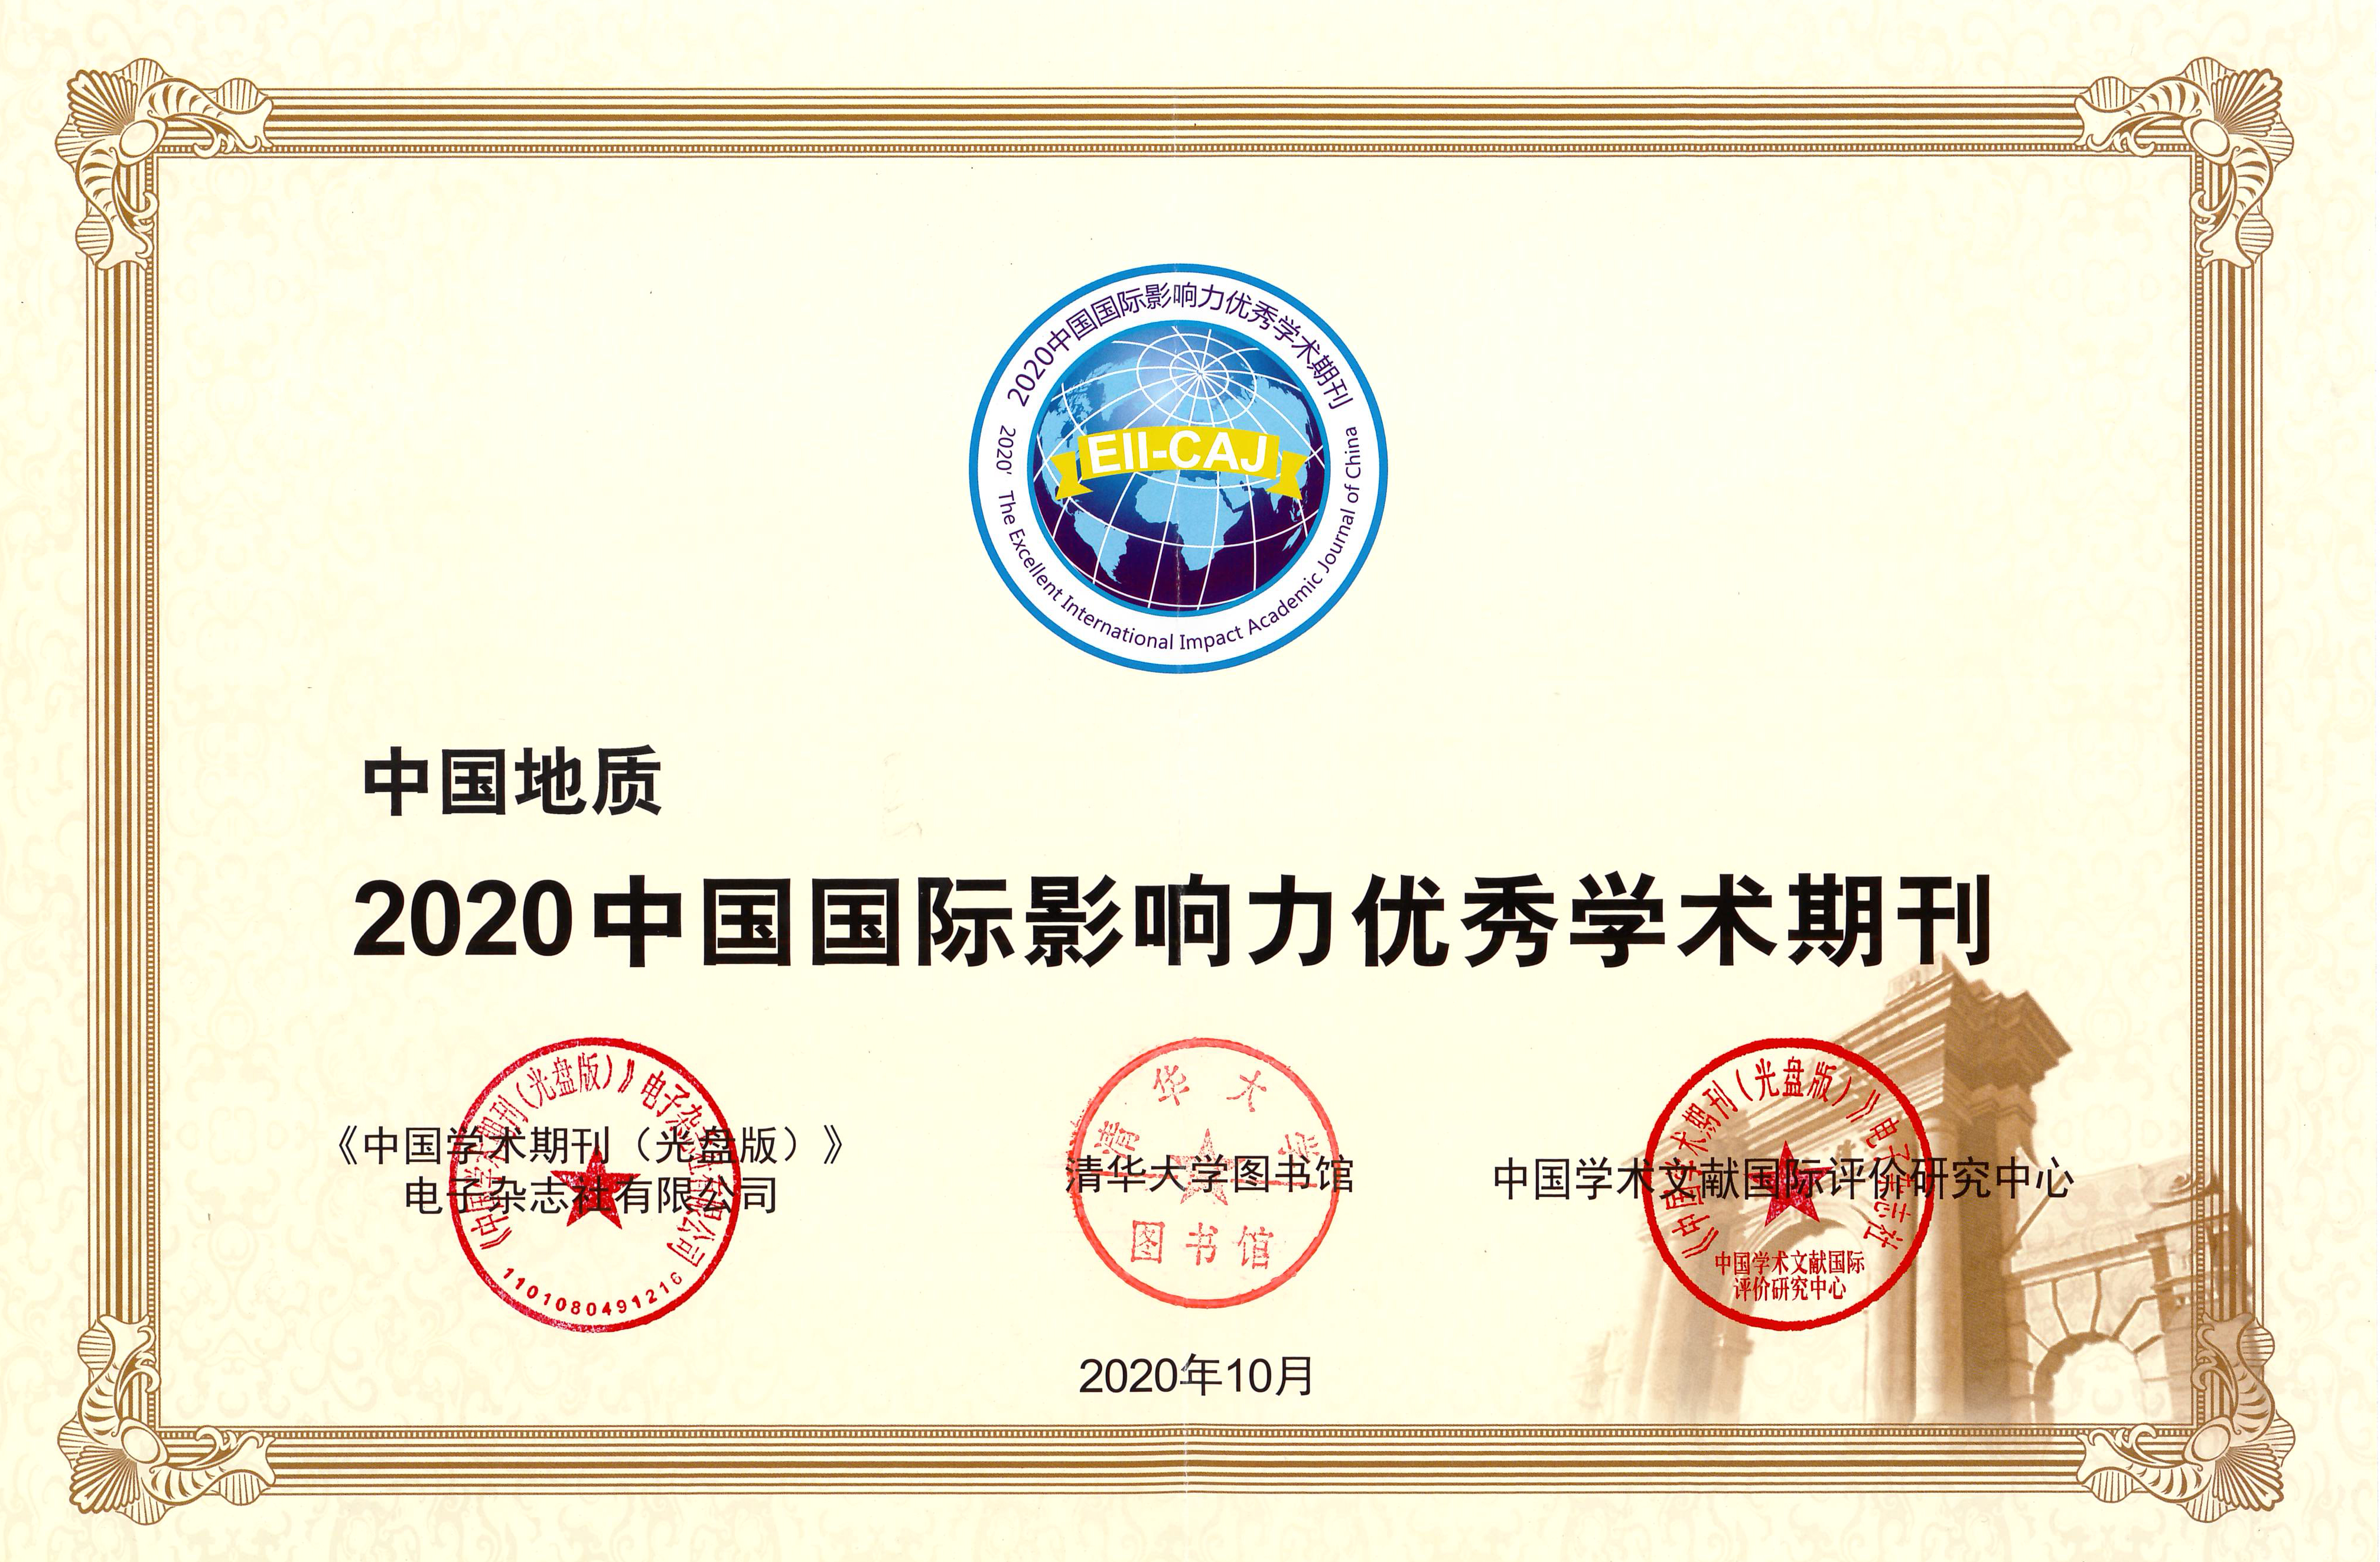 中国地质－2020国际影响力优秀证书